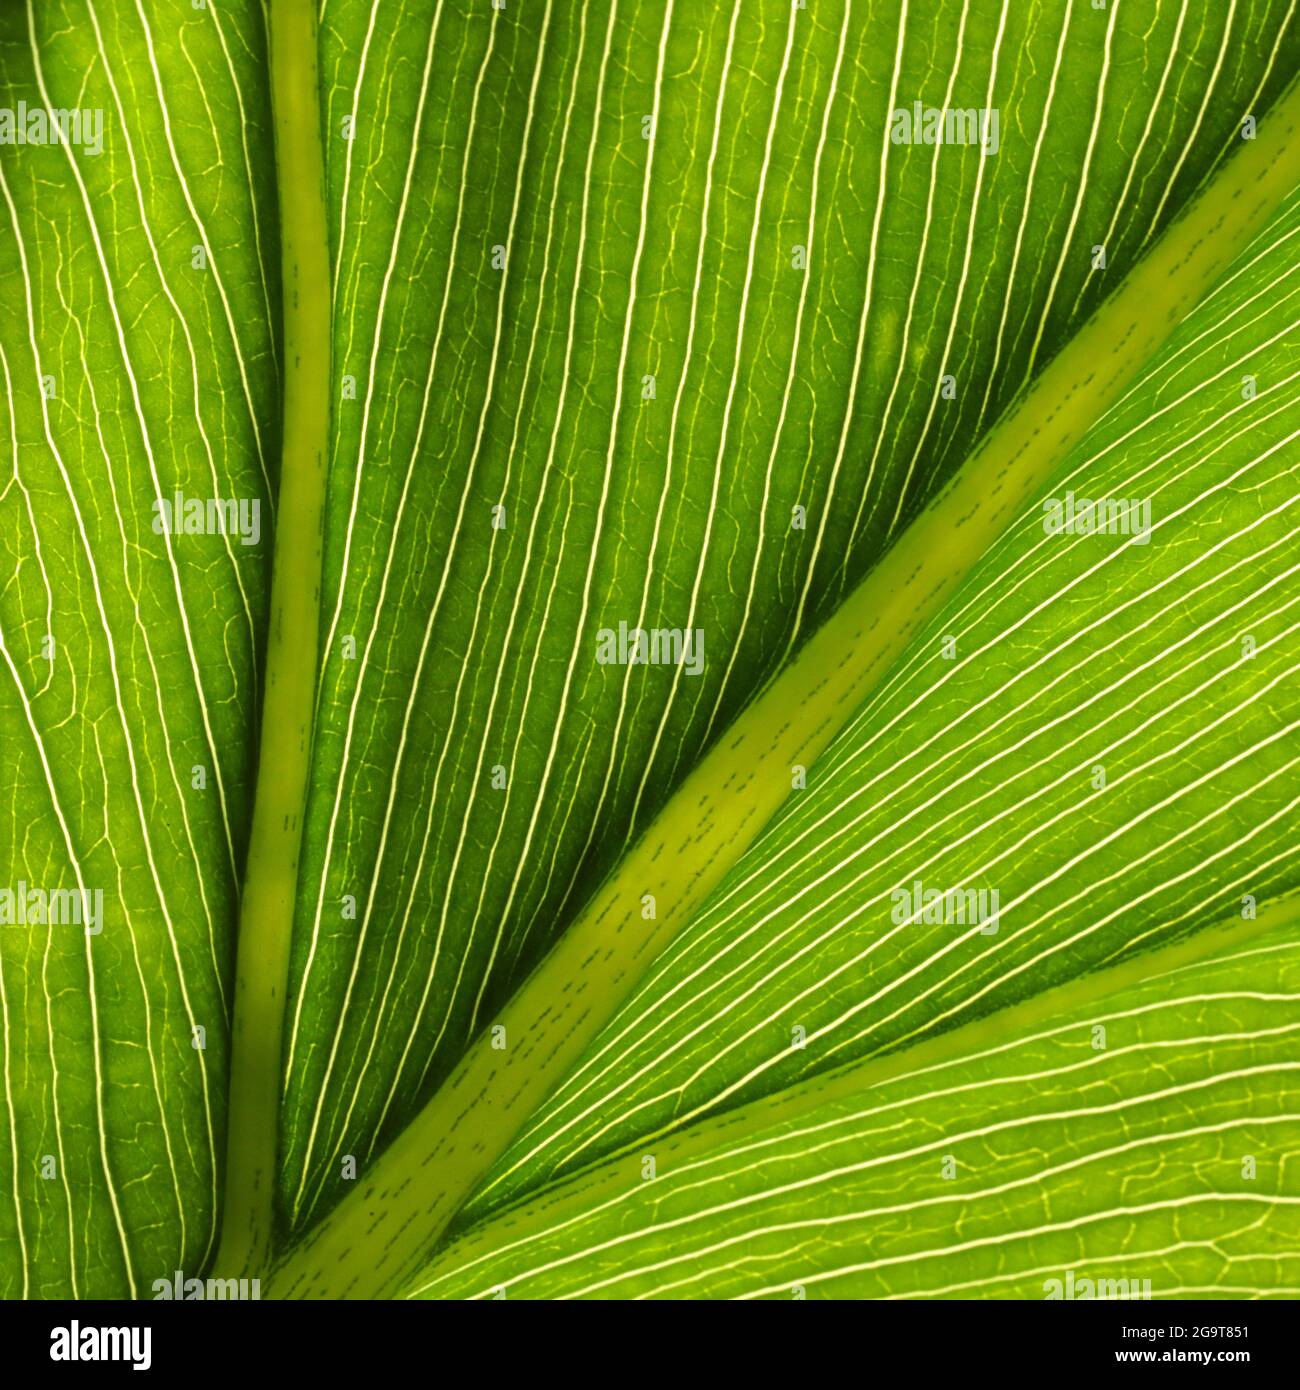 Un magnifique riche et lumineux vert jaune créé par une vue macro des veines et de la structure cellulaire d'une feuille tropicale. Belle nature Banque D'Images